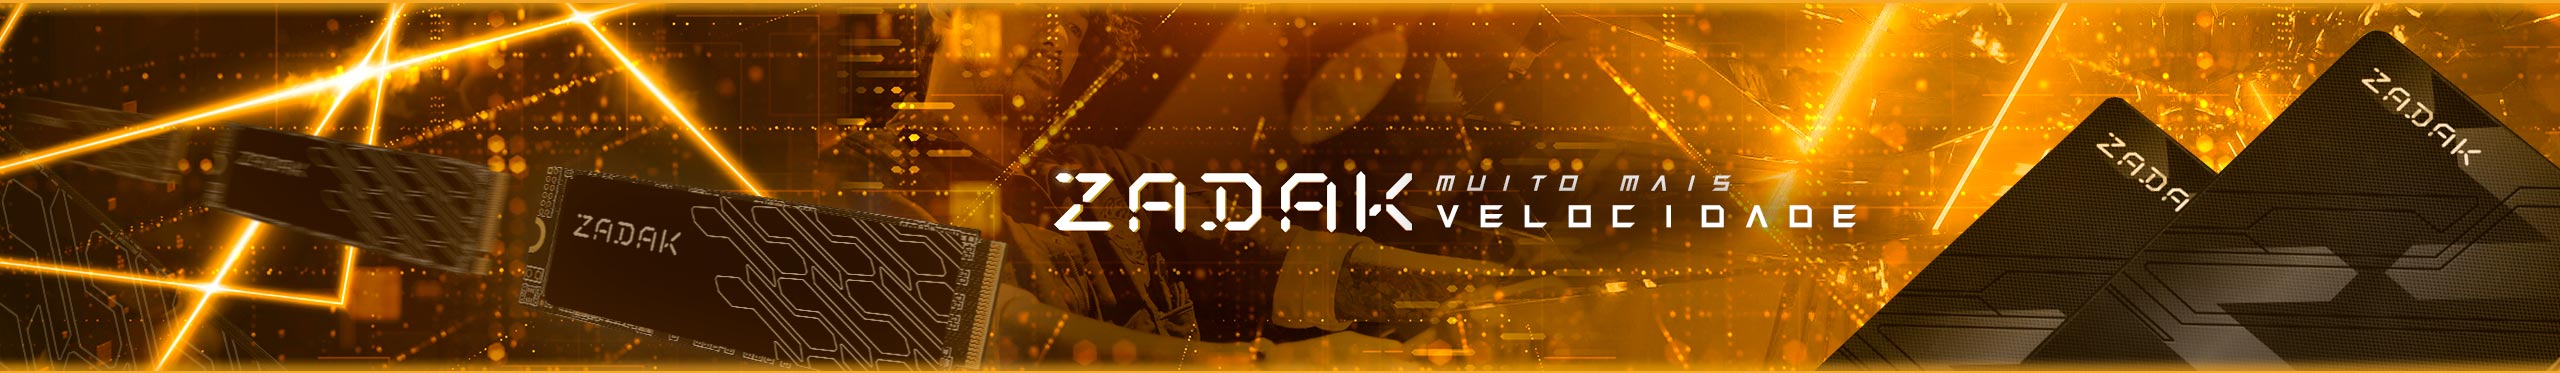 Zadak no seu PC é muito mais velocidade! Confira os modelos disponíveis!